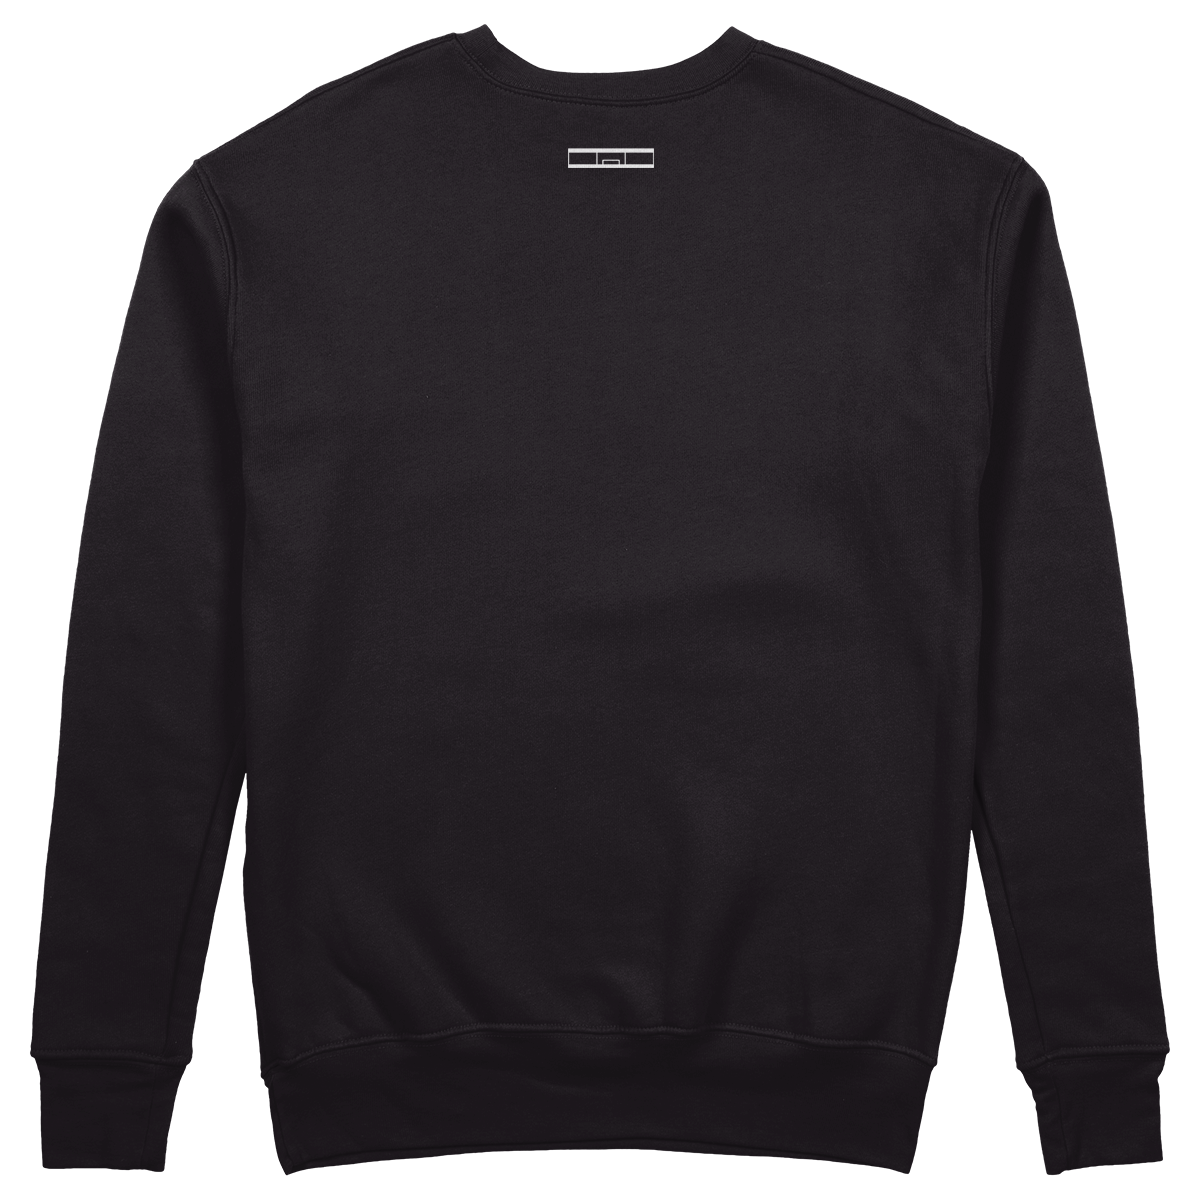 Topfanz Sweater black "DE K"